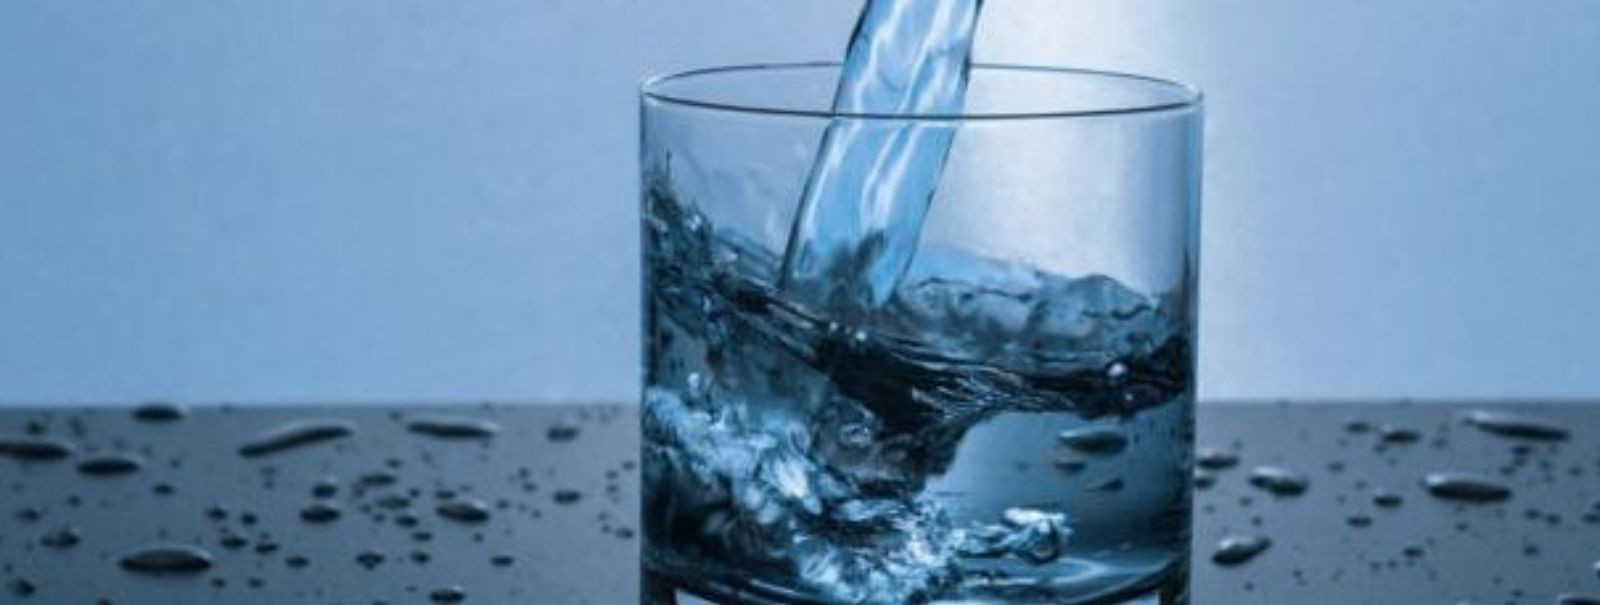  Puhas ja tervislik joogivesi on üks olulisemaid aspekte, et tagada inimeste tervis ja heaolu. Joogivee kvaliteedi tagamine võib aga olla keeruline, eriti kui S